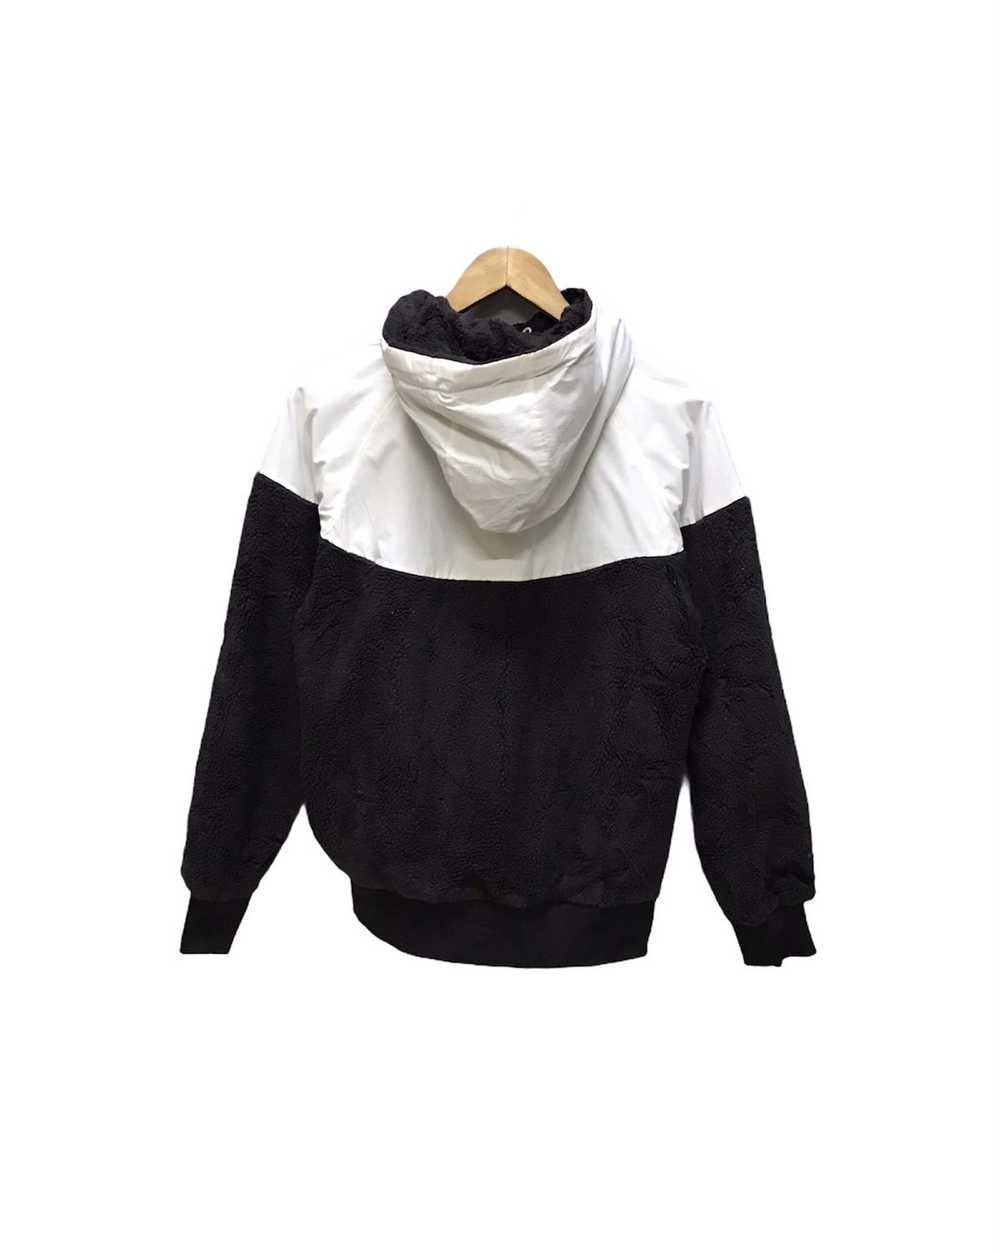 Nike Nike Sweatshirt hoodie revesible zipper jack… - image 5